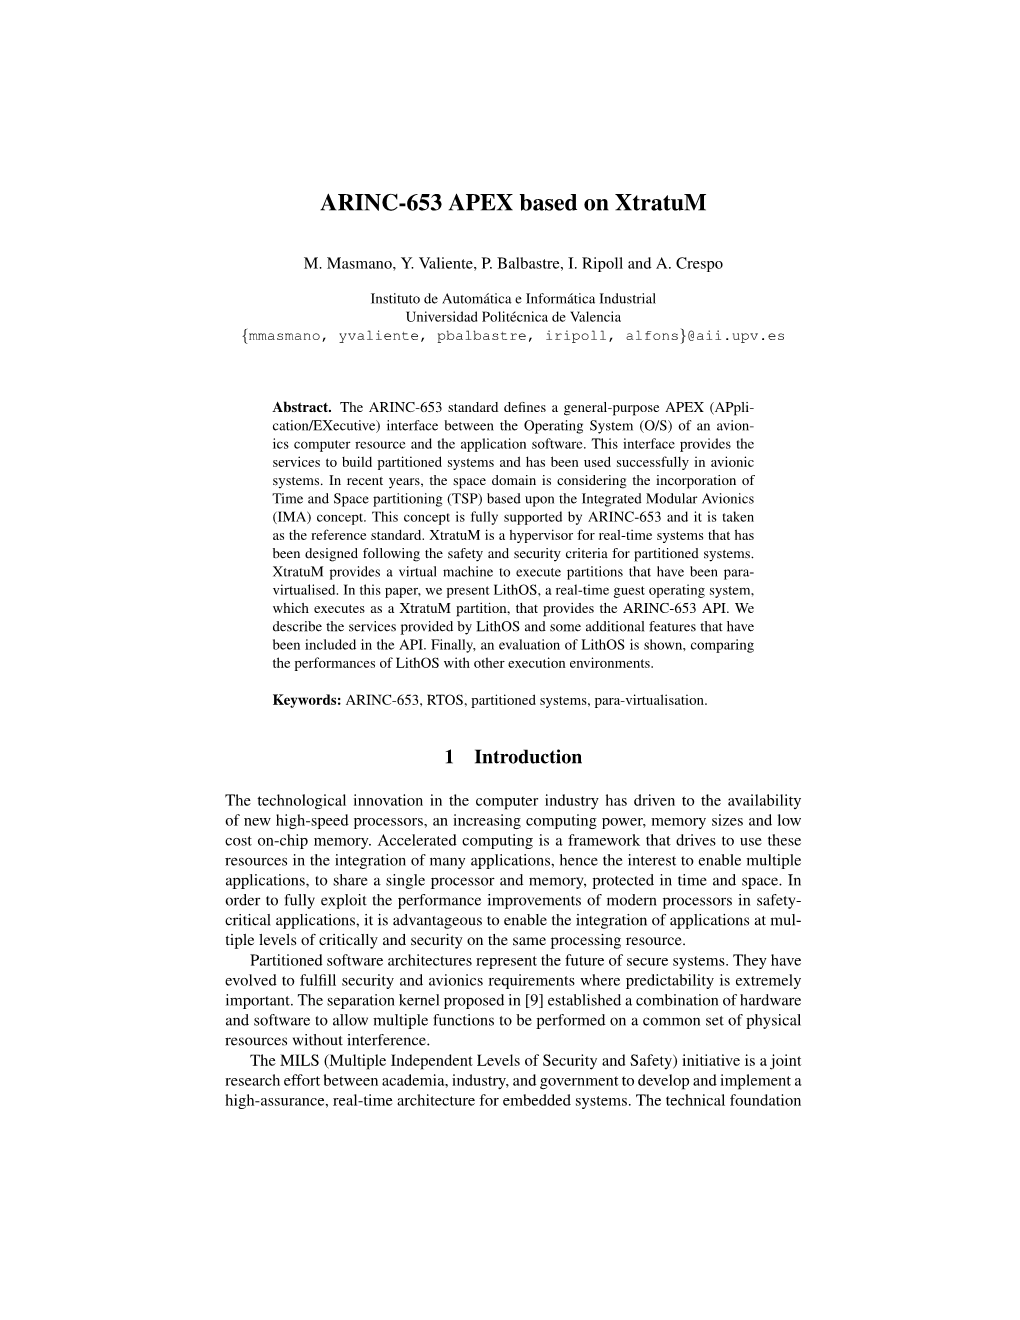 ARINC-653 APEX Based on Xtratum